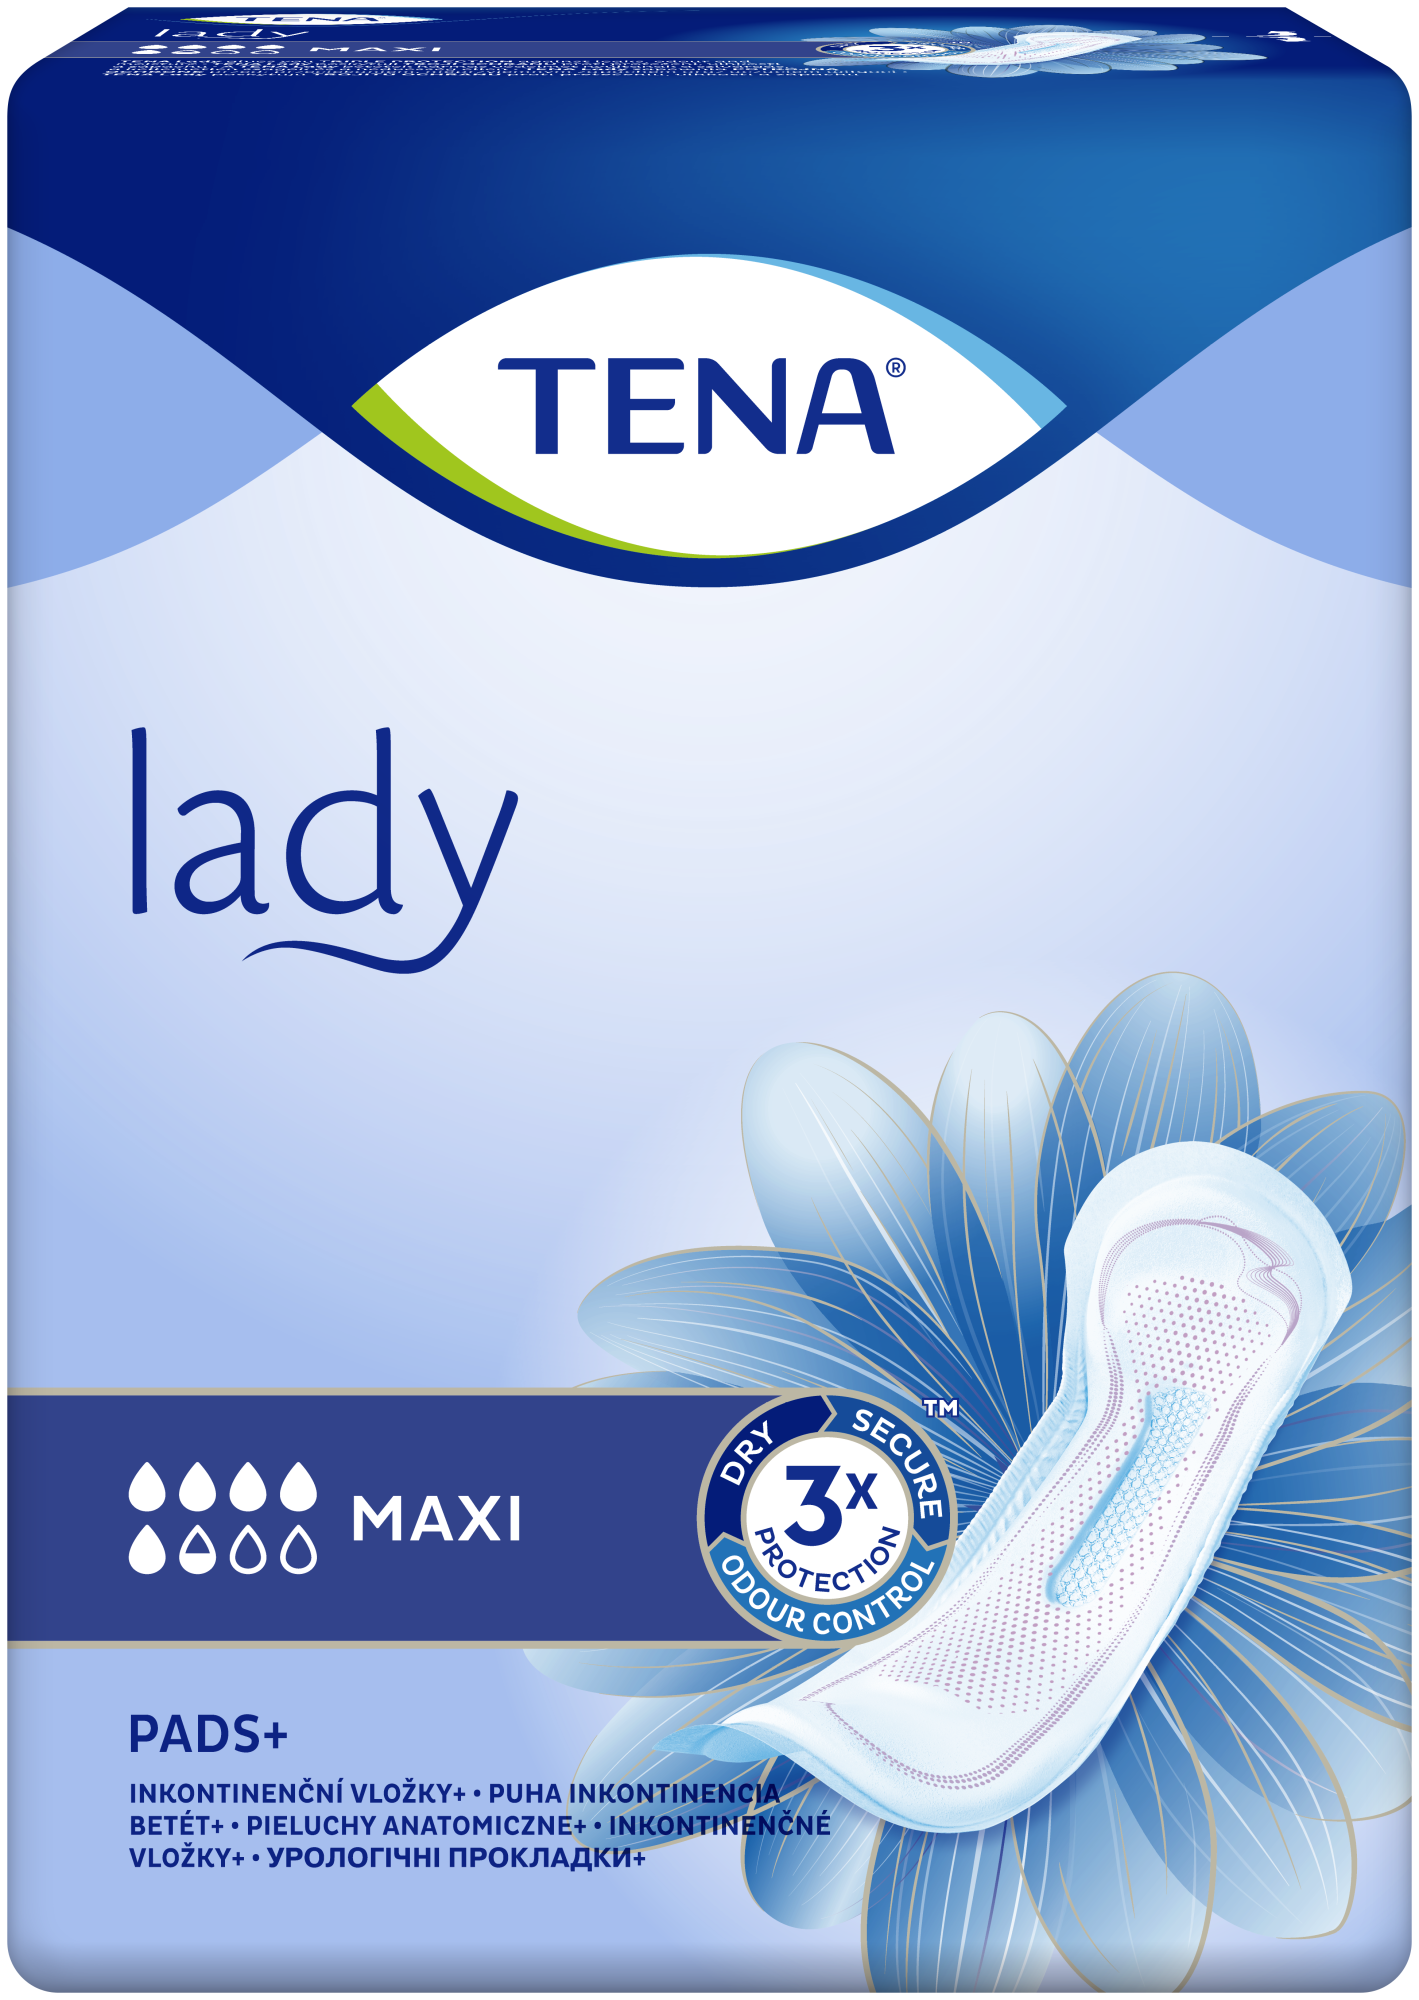 TENA Lady Maxi | mekani i sigurni inkontinencijski ulošci za žene